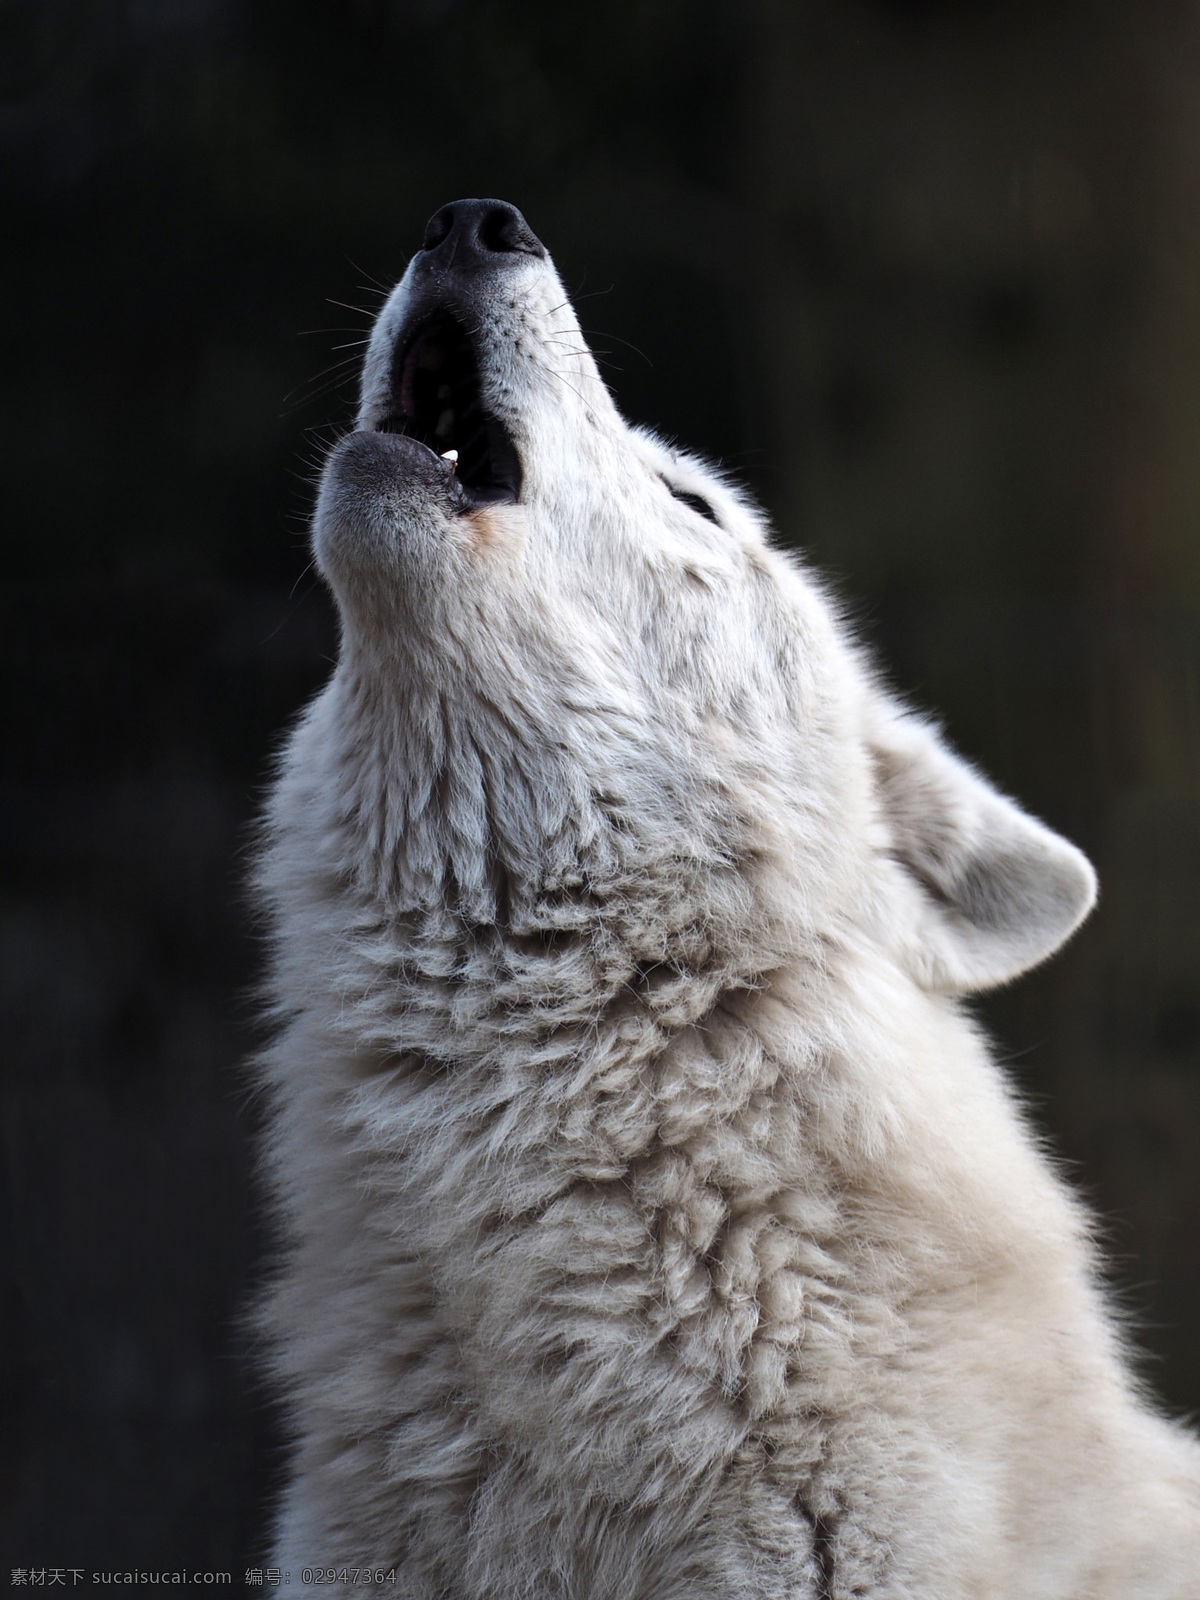 狼 狼摄影 公狼 母狼 狼崽 小狼 狼宝宝 动物 狼图片 狼素材